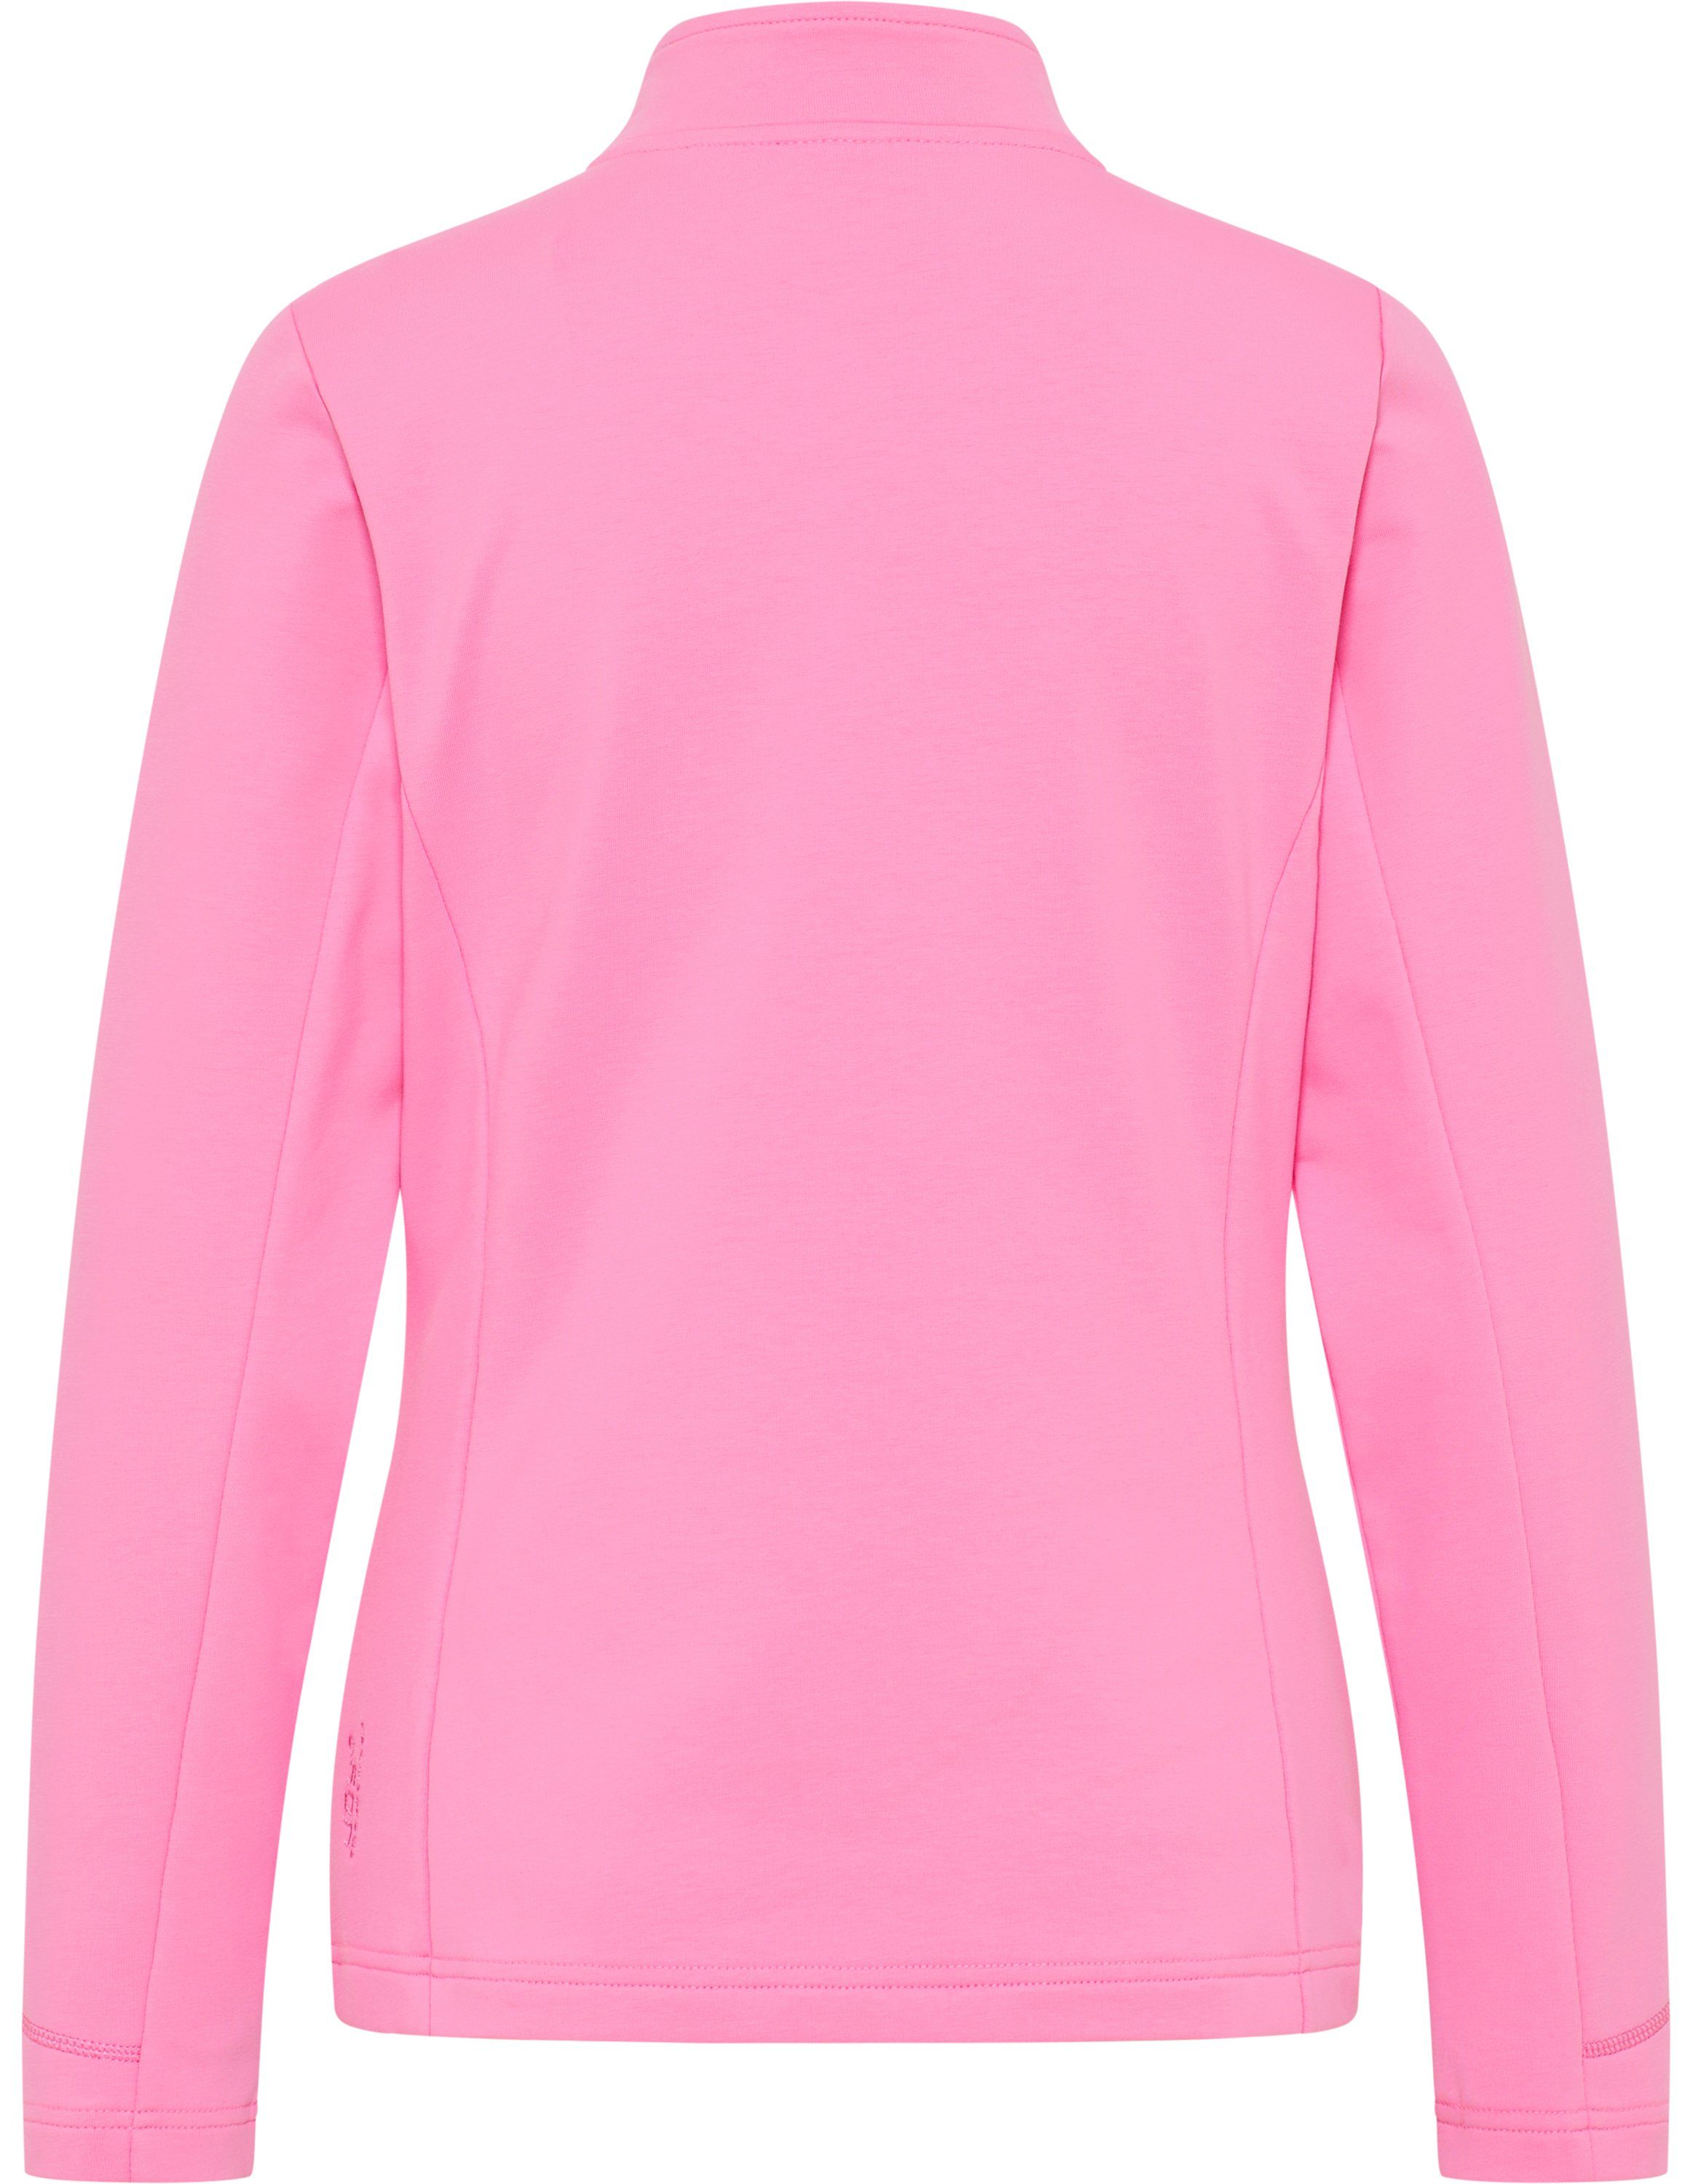 DORIT cyclam pink Trainingsjacke Sportswear Joy Jacke